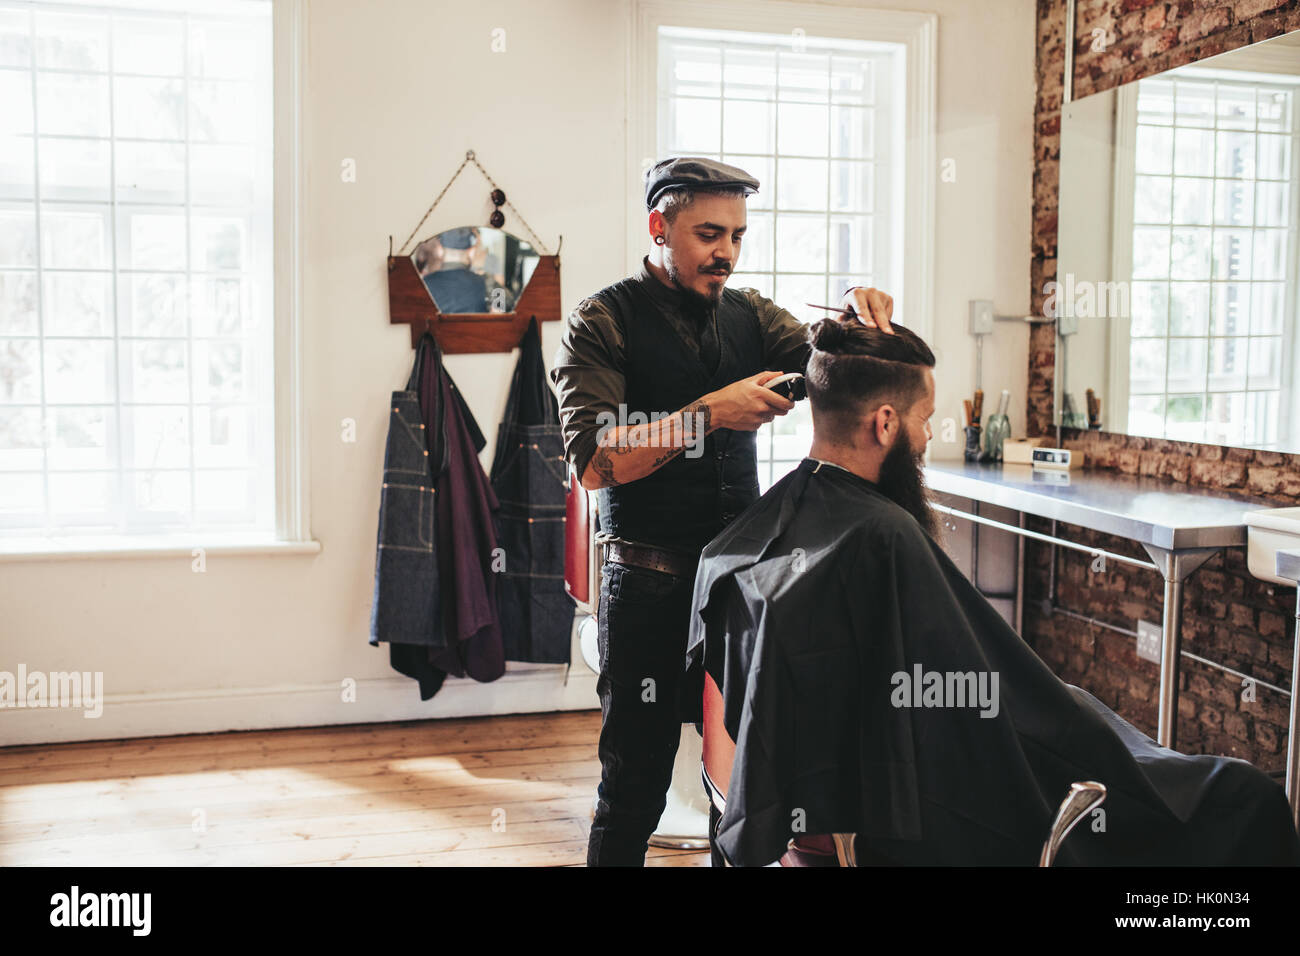 Peluquería masculina dando recortes de cliente en la tienda. Peluquería para moldear el cabello del cliente en el salón. Foto de stock